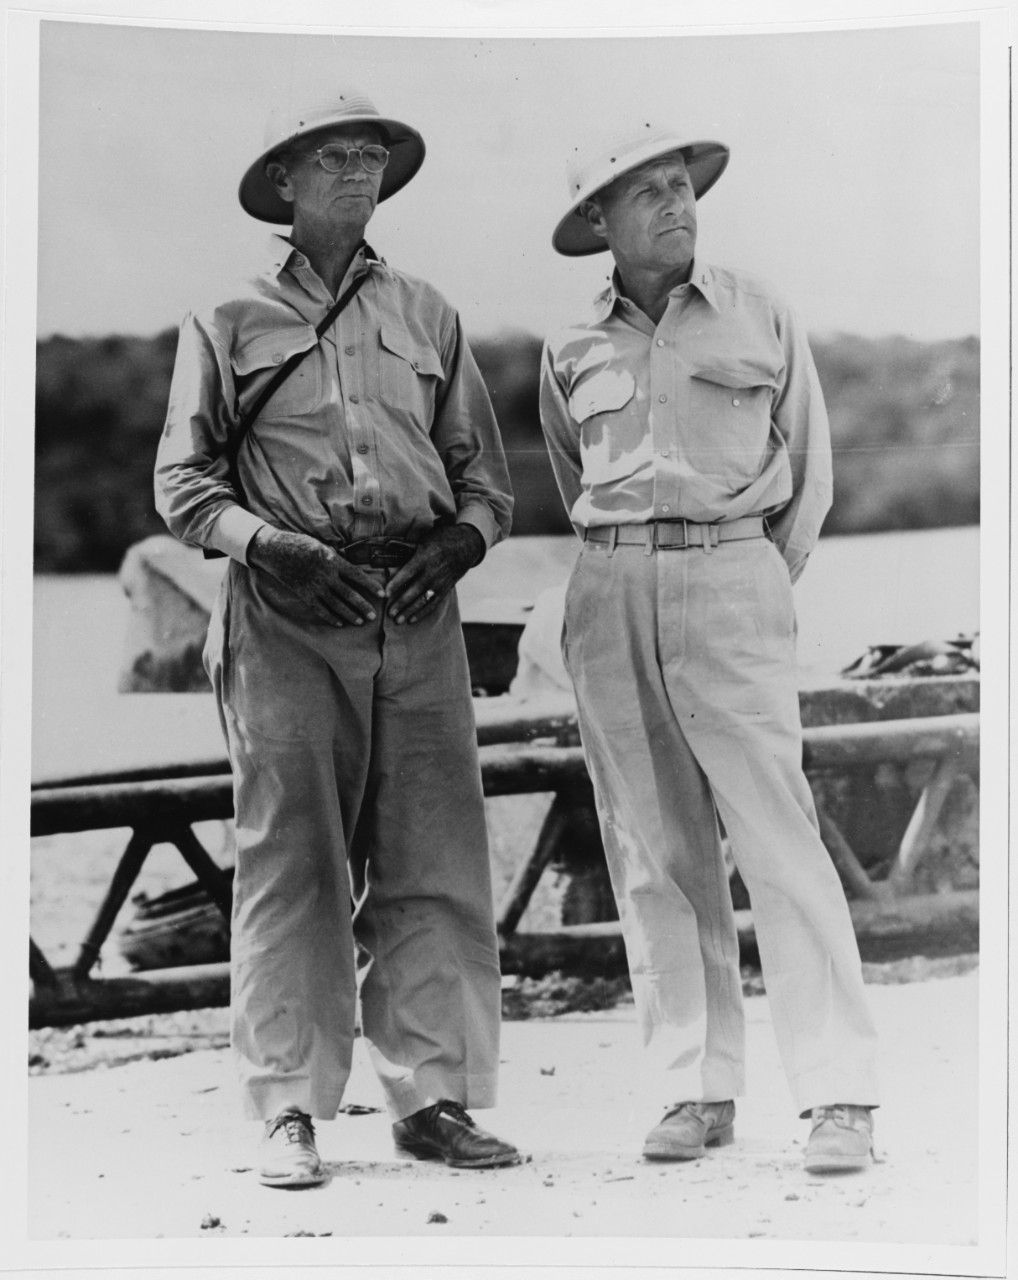 CAPT C.J. Moore, CAPT E.R. Johnson at Naval Base "Piti", Apra Harbor, Guam, 31 July 1944